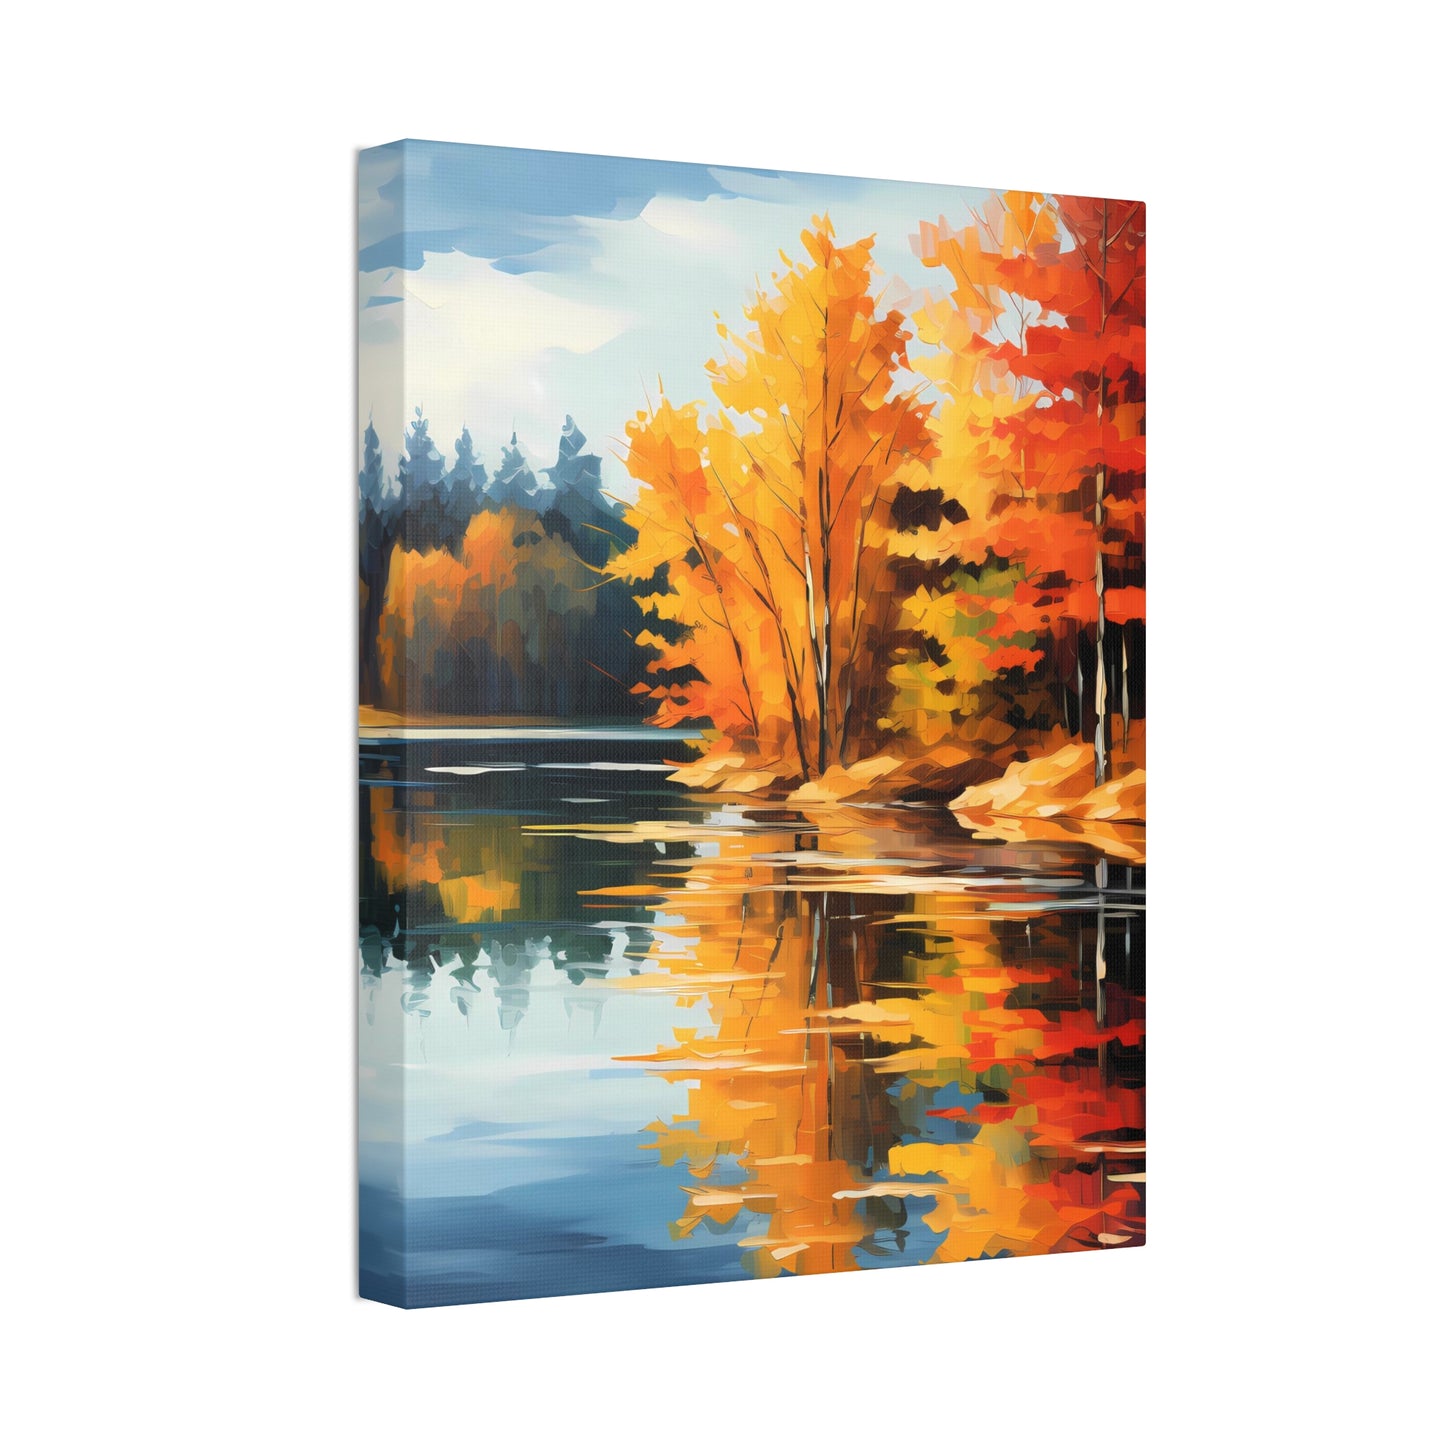 Autumn's Mirror Lake